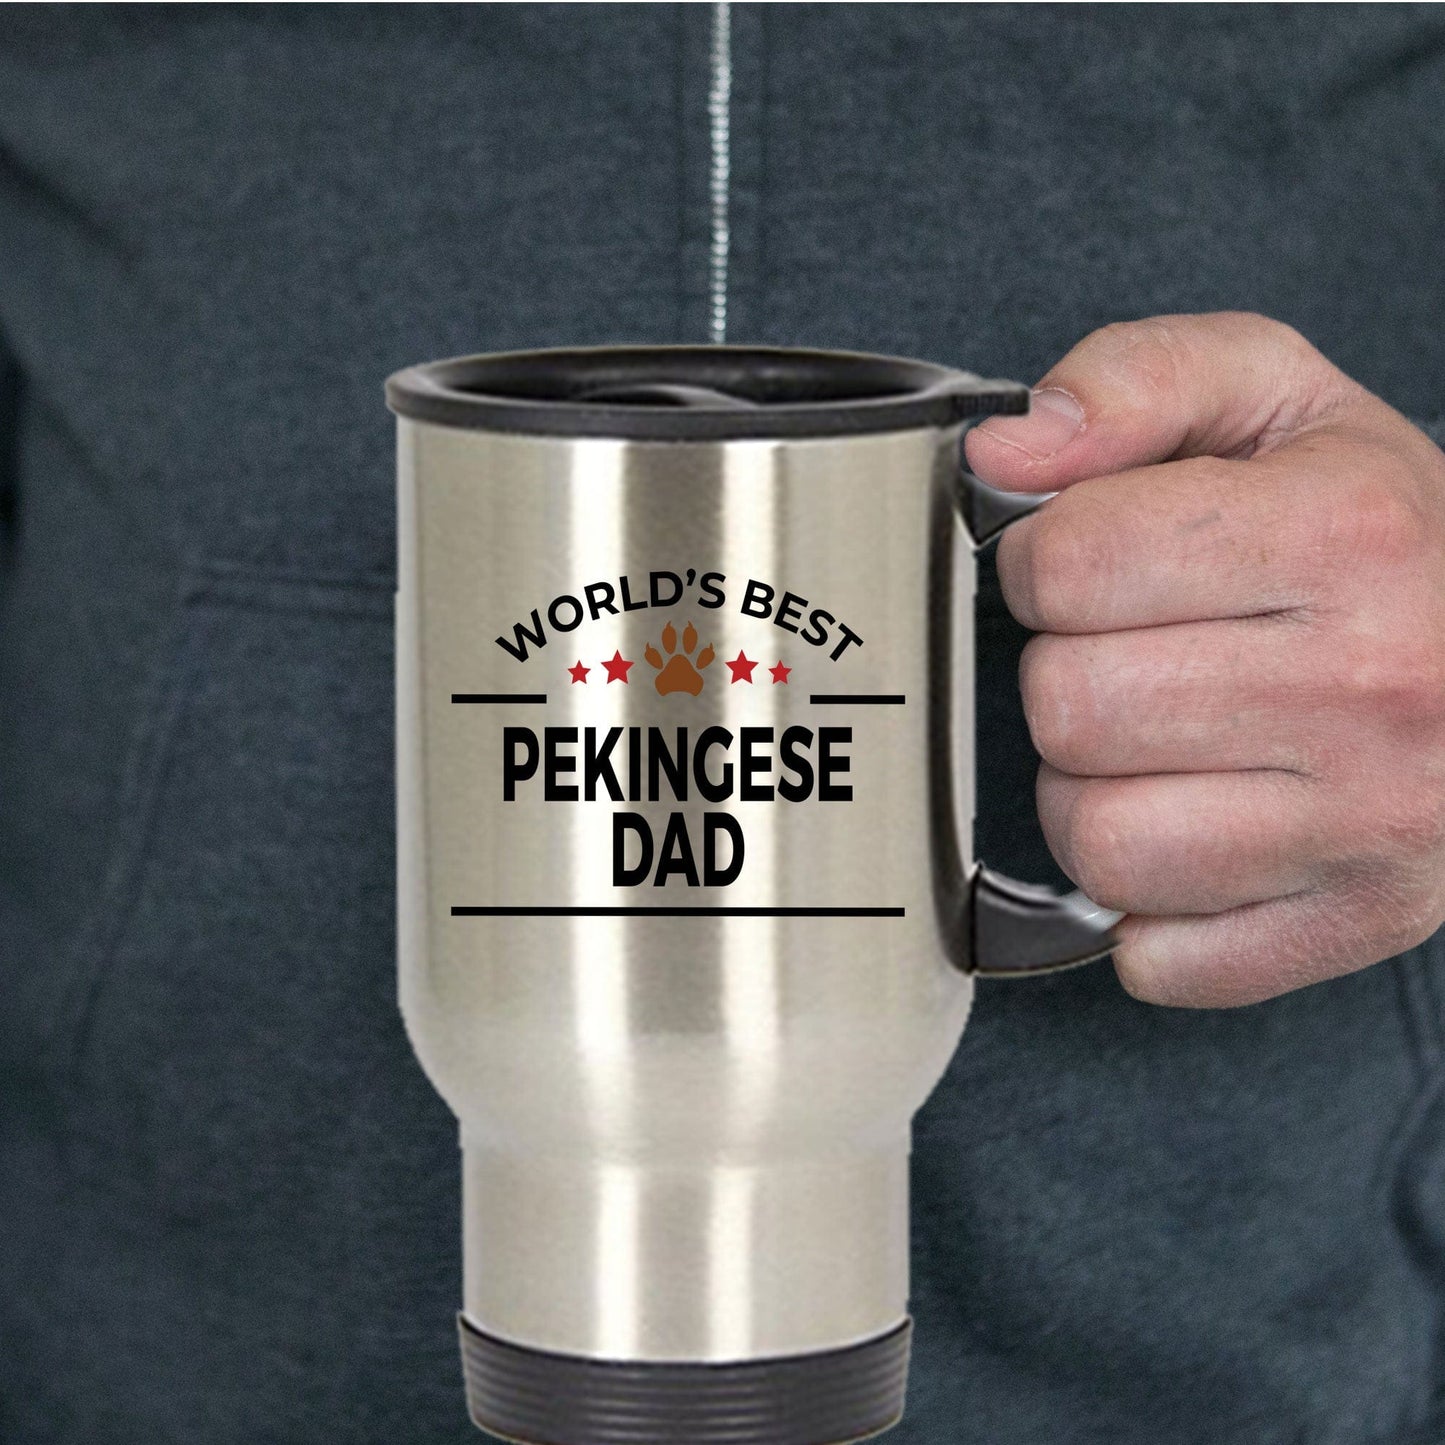 Pekingese Dog Dad Travel Coffee Mug